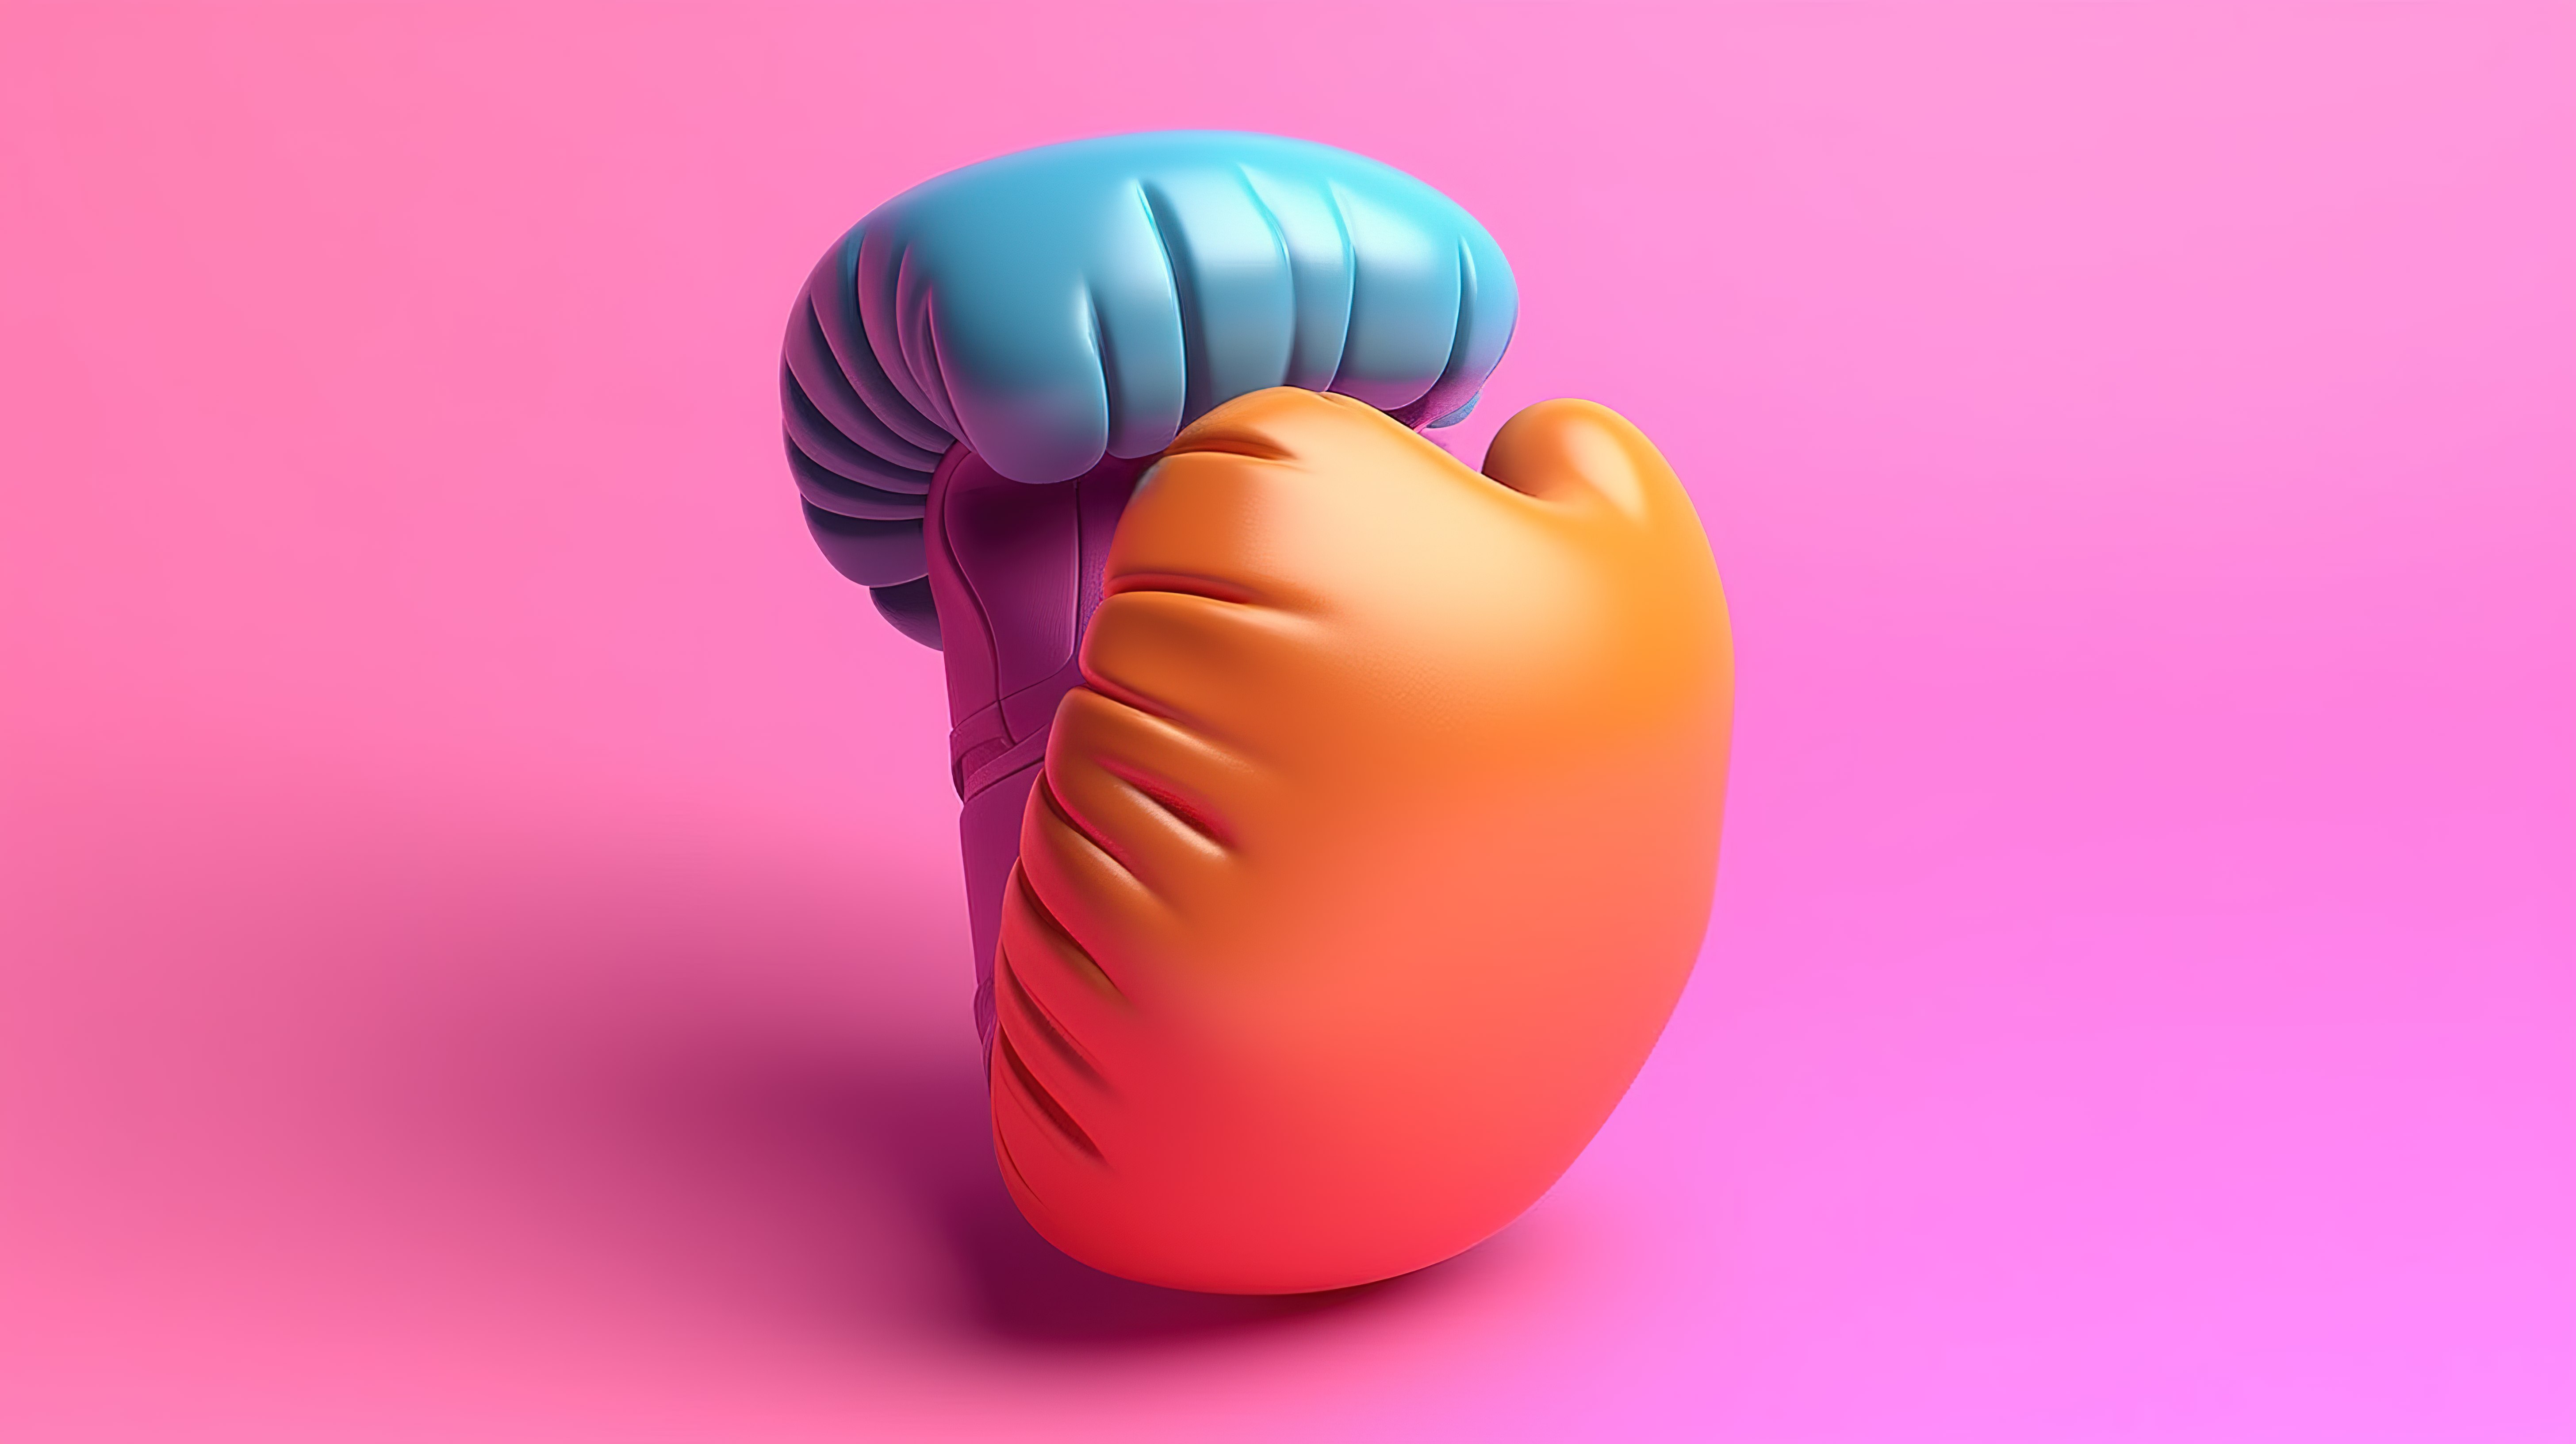 粉红色背景 3D 渲染运动主题下放置的多色拳击手套充满活力的特写图片